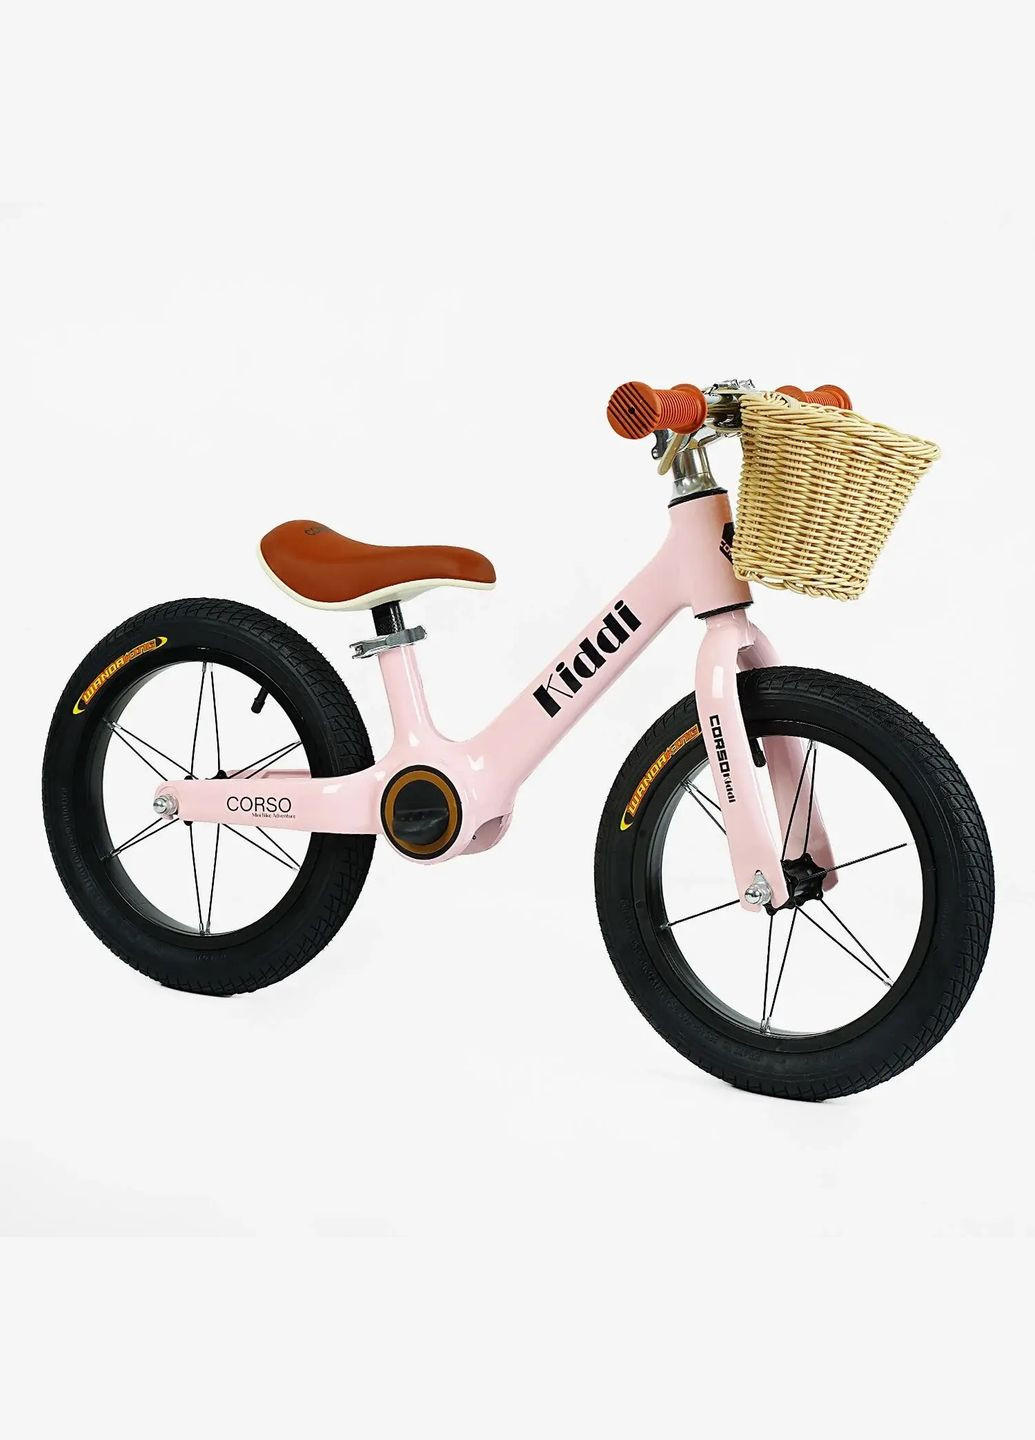 Дитячий велобіг KIDDI LT-14055. Магнієва рама, надувні колеса 14", підставка для ніг, кошик Corso (290254804)